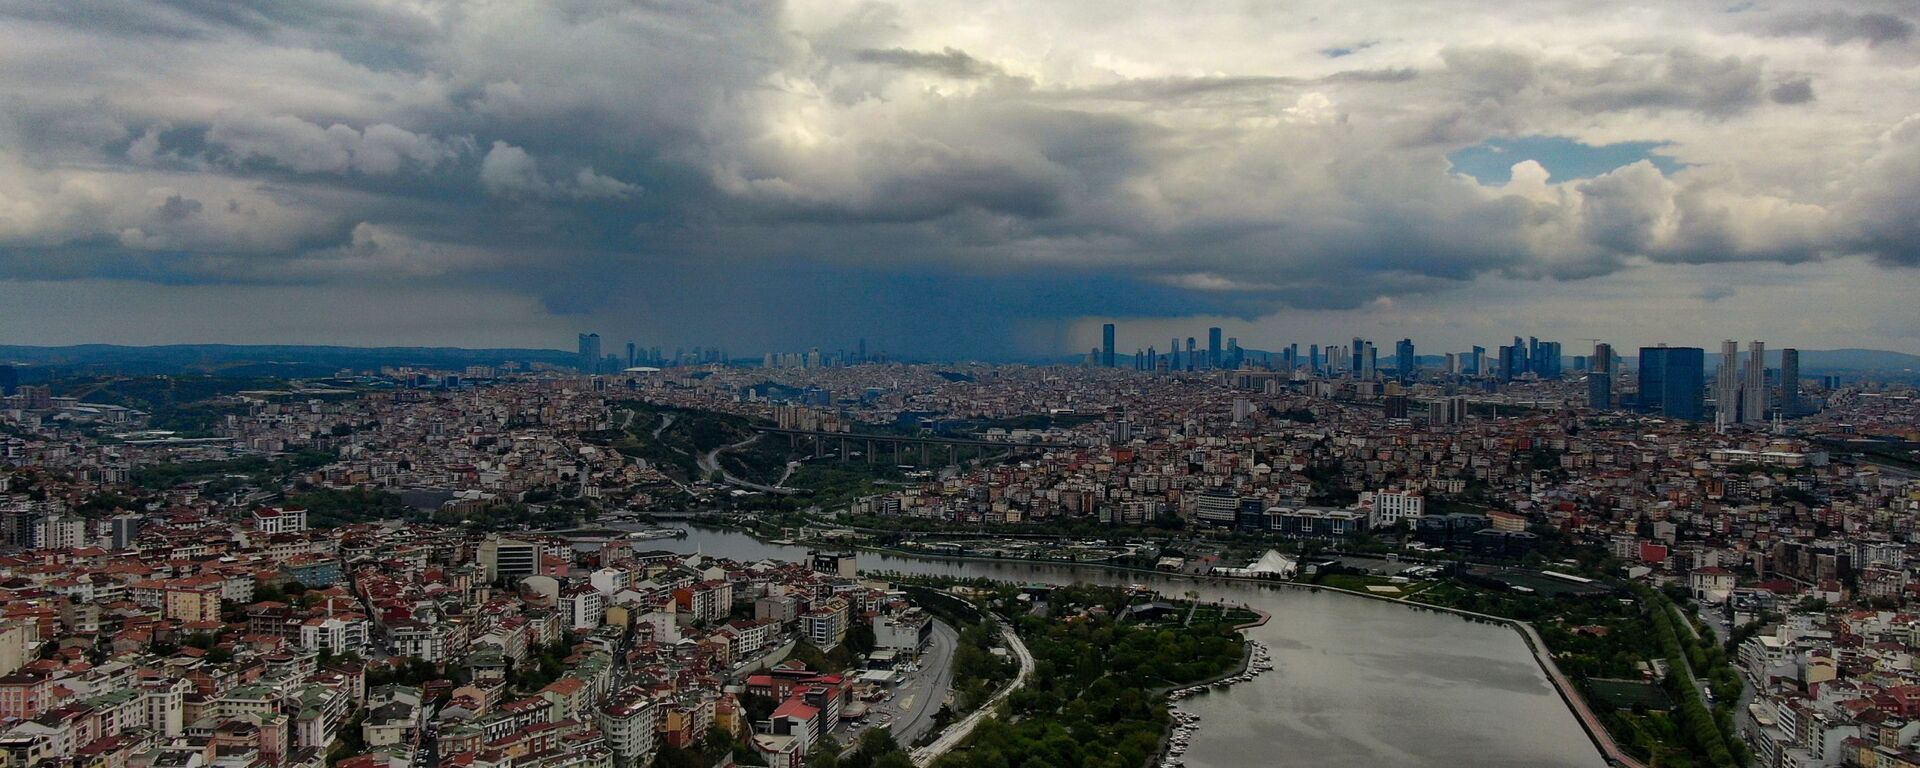 İstanbul- Yağmur - Sputnik Türkiye, 1920, 19.10.2021